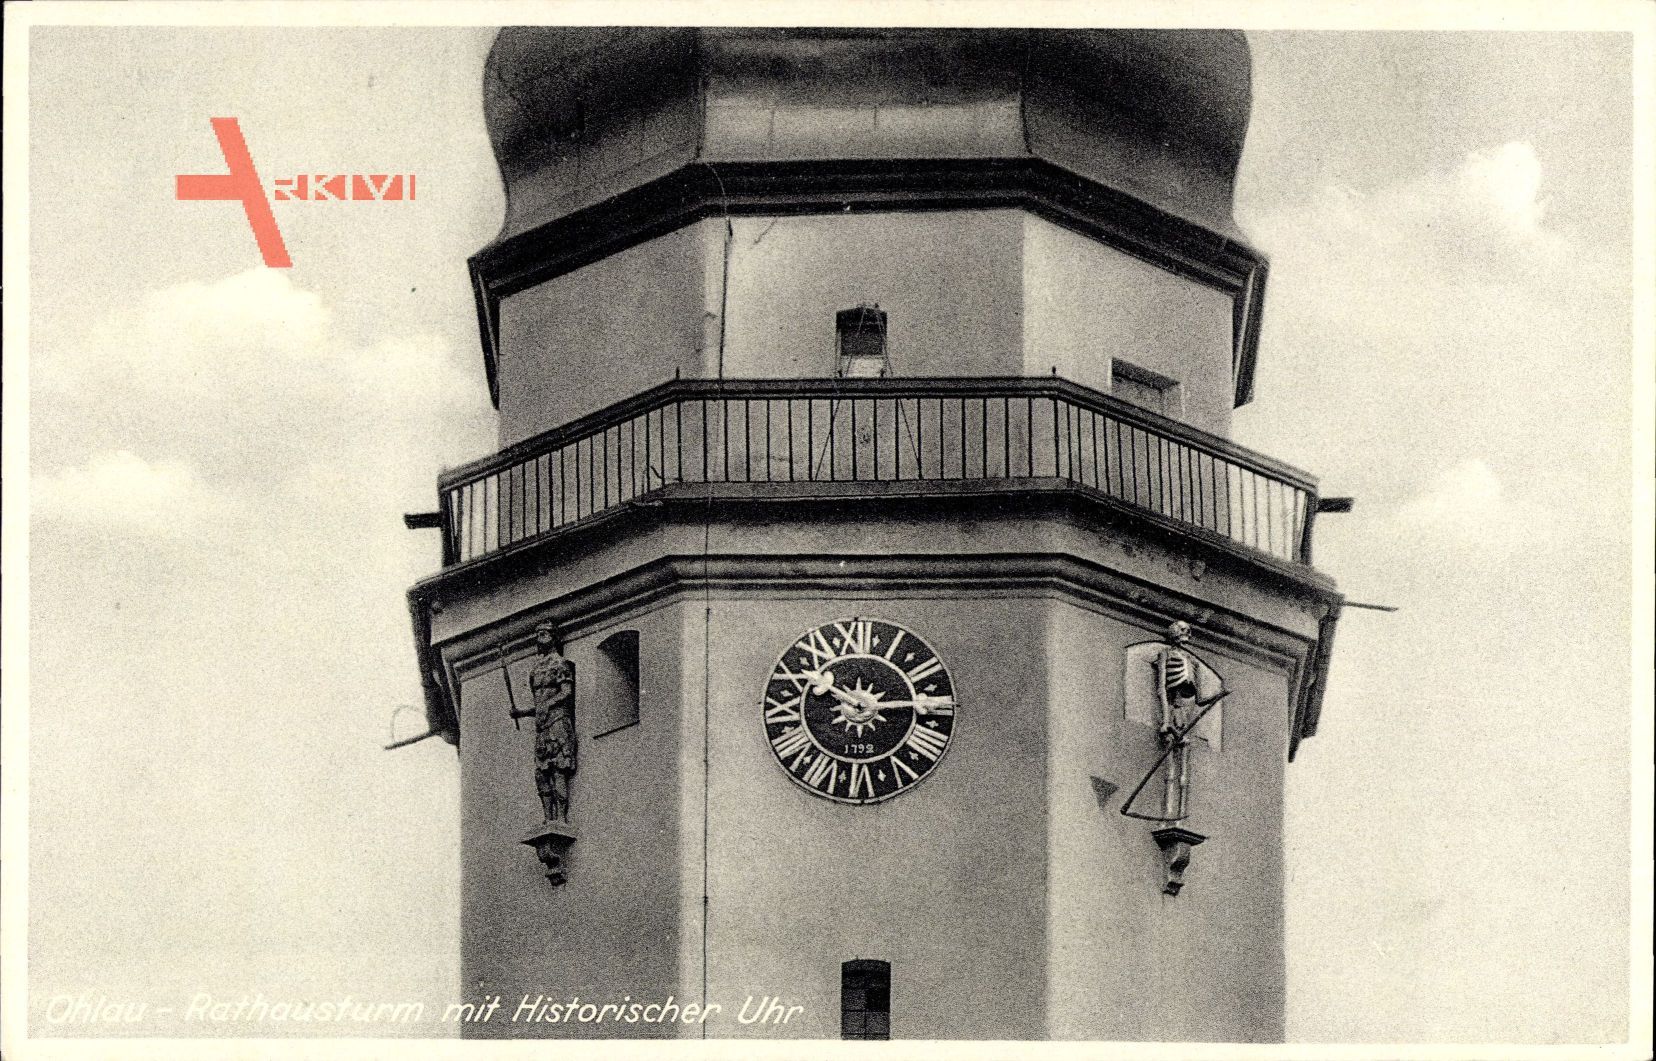 Oława Ohlau Schlesien, Rathausturm mit Historischer Uhr, Stengel 72790